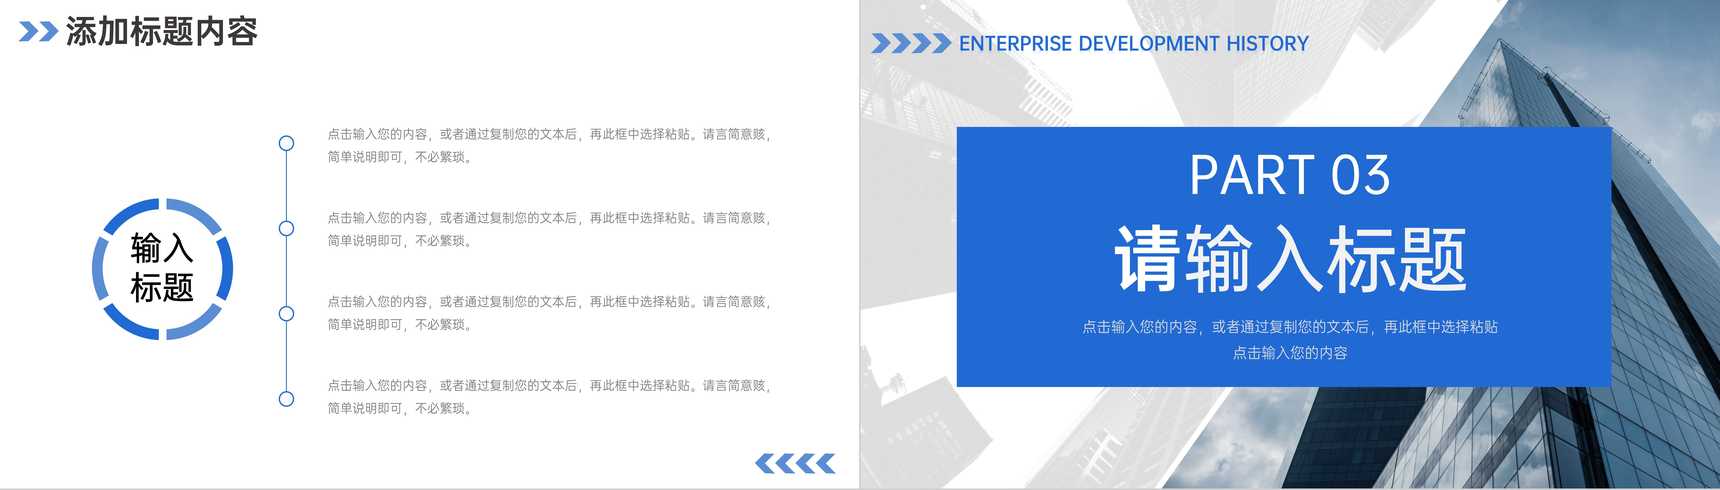 蓝色大气企业发展历程公司情况介绍PPT模板-6